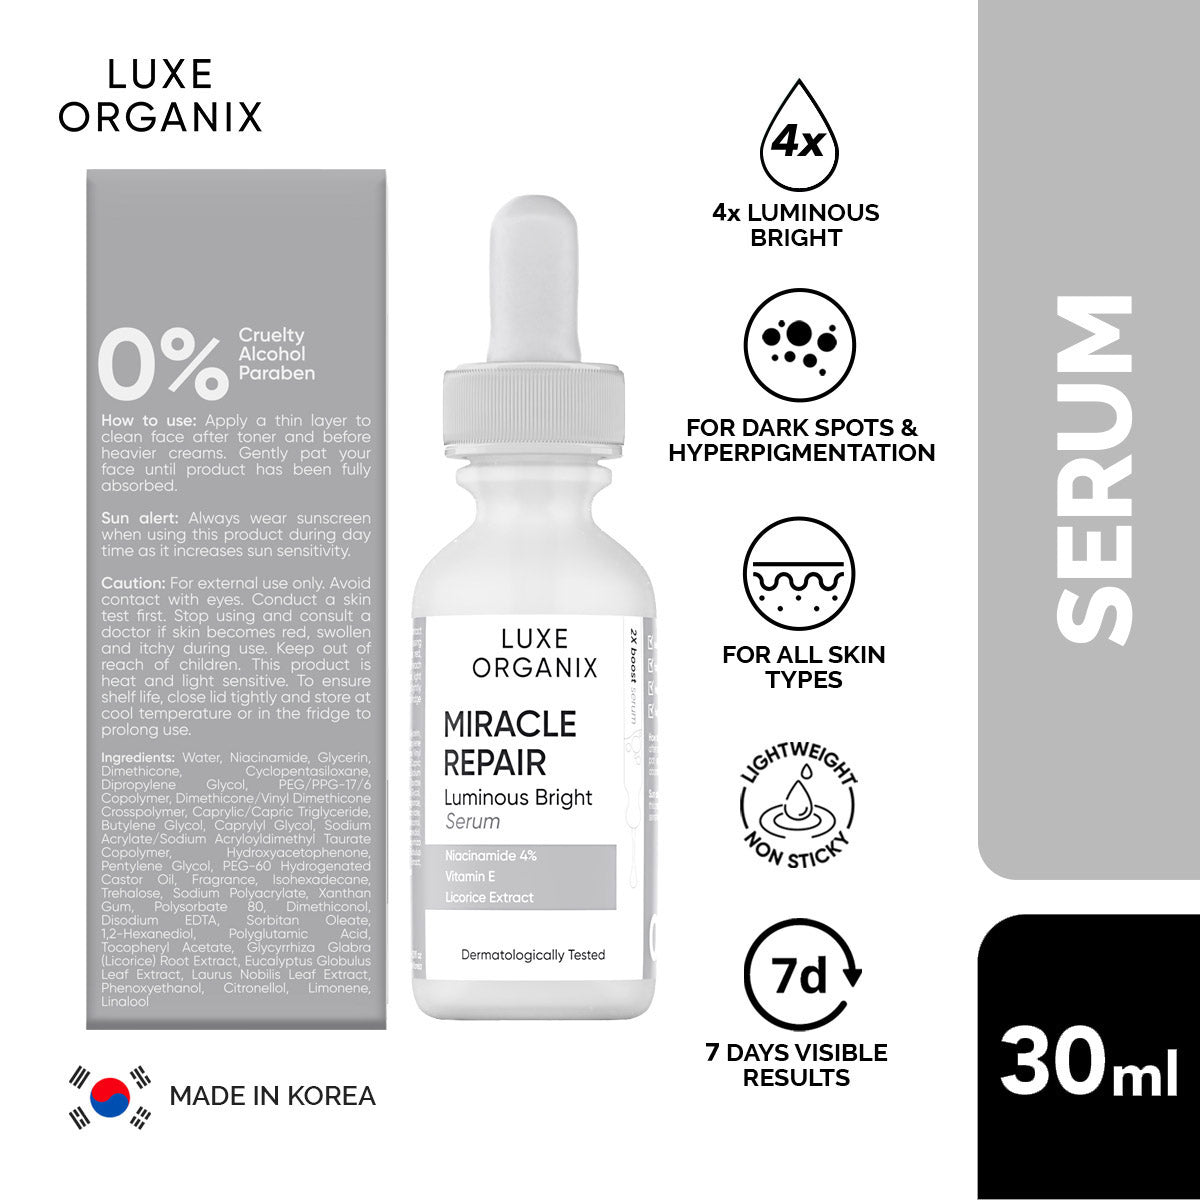 Luxe Organix Miracle Repair Serum Niacinamide 4% 30ml